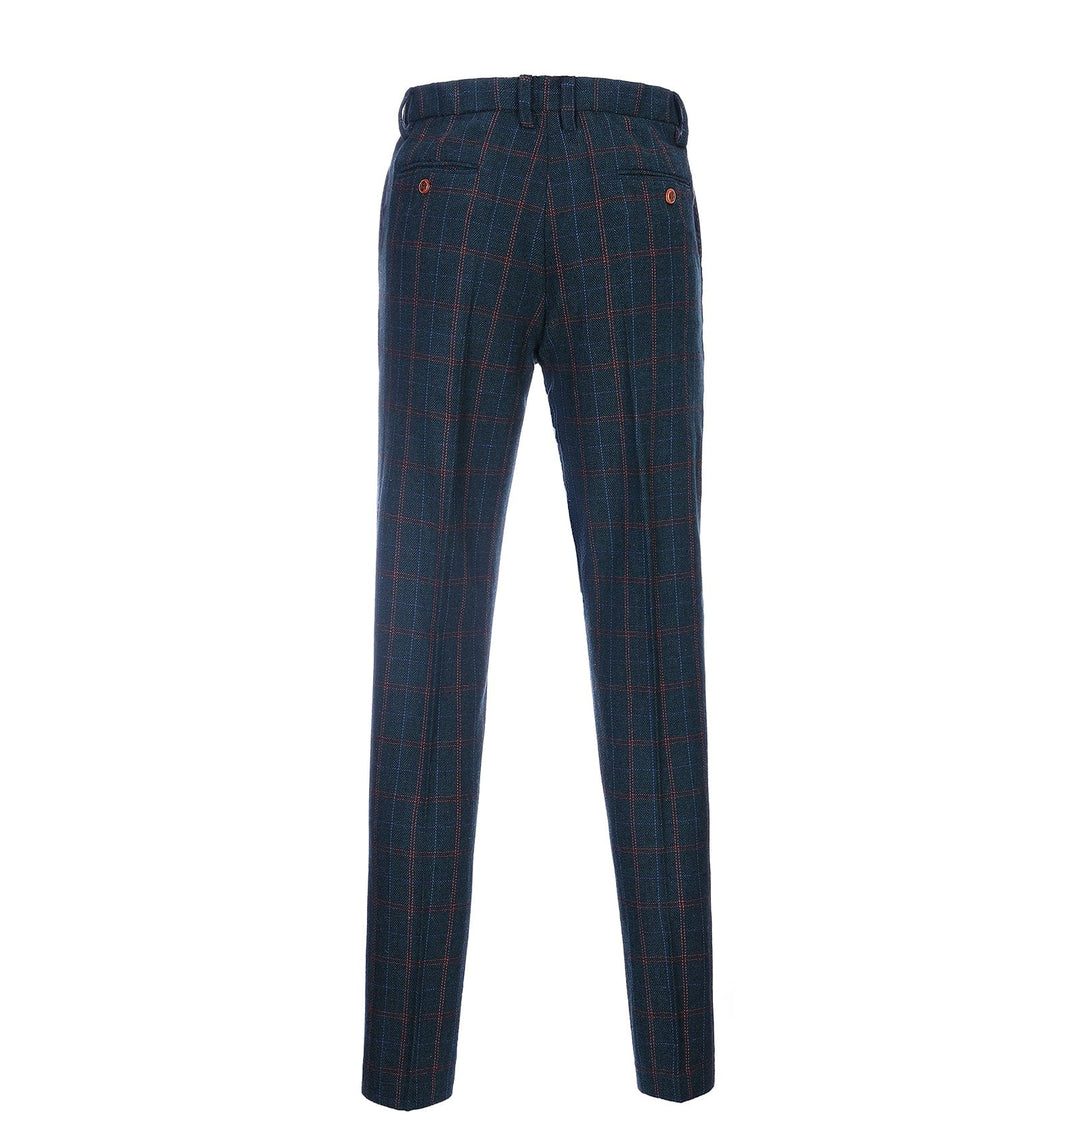 Casual Men's Suit Pant Navy Plaid Pleat-Front Trousers menseventwear